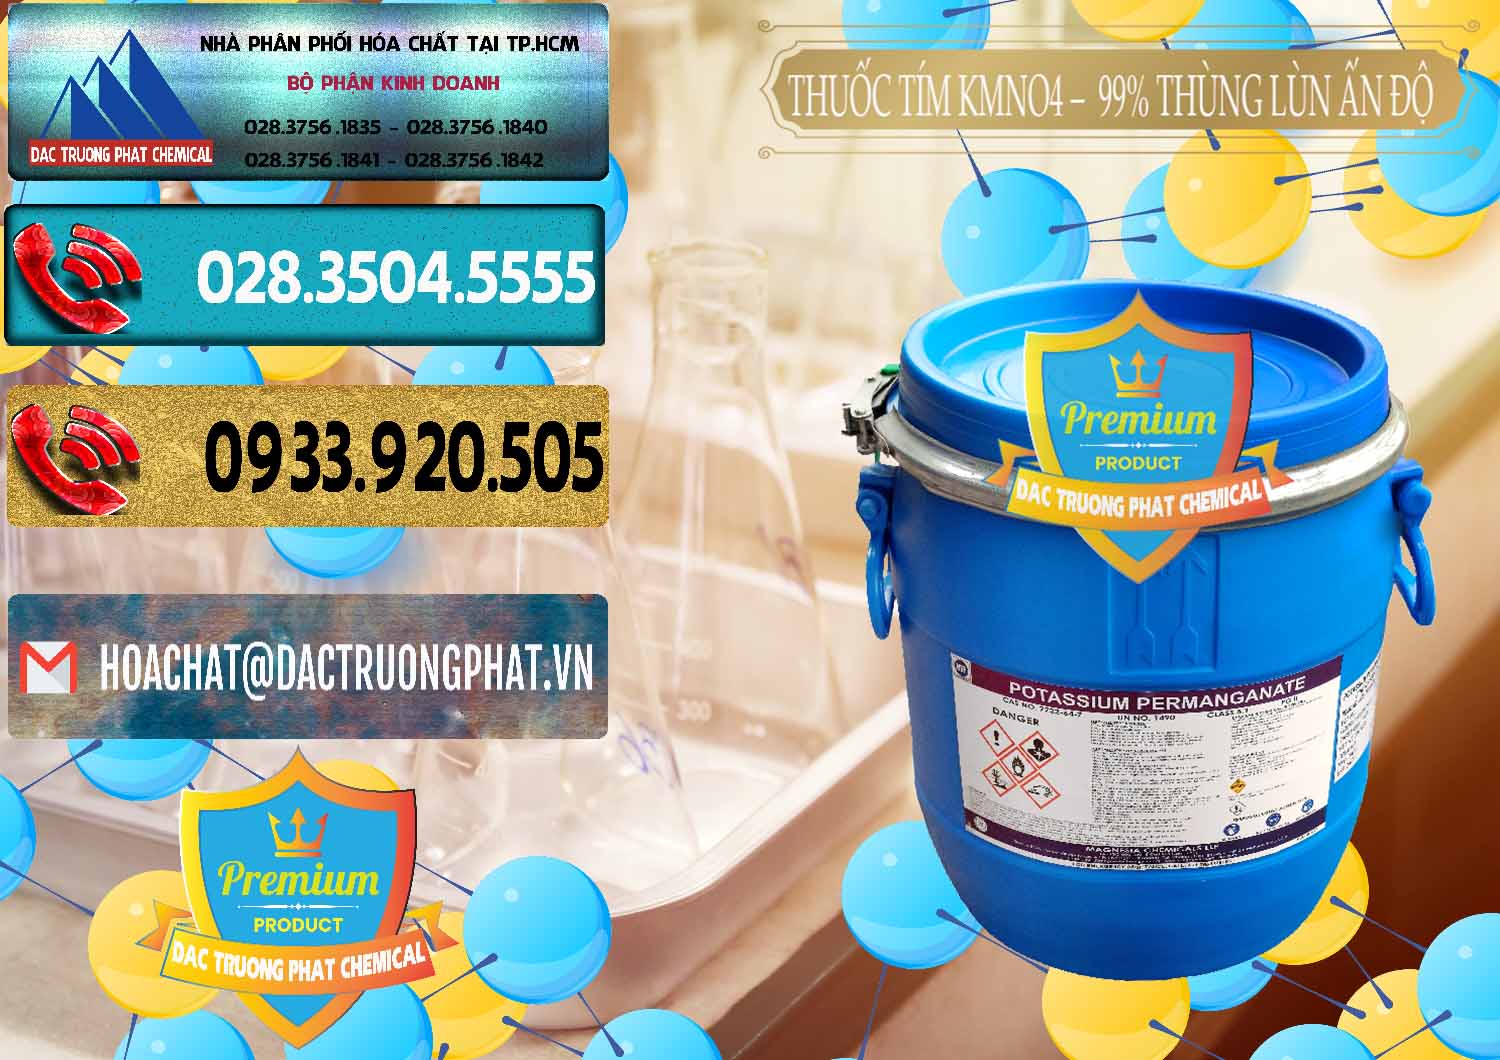 Cty chuyên bán & cung cấp Thuốc Tím - KMNO4 Thùng Lùn 99% Magnesia Chemicals Ấn Độ India - 0165 - Chuyên bán & phân phối hóa chất tại TP.HCM - hoachatdetnhuom.com